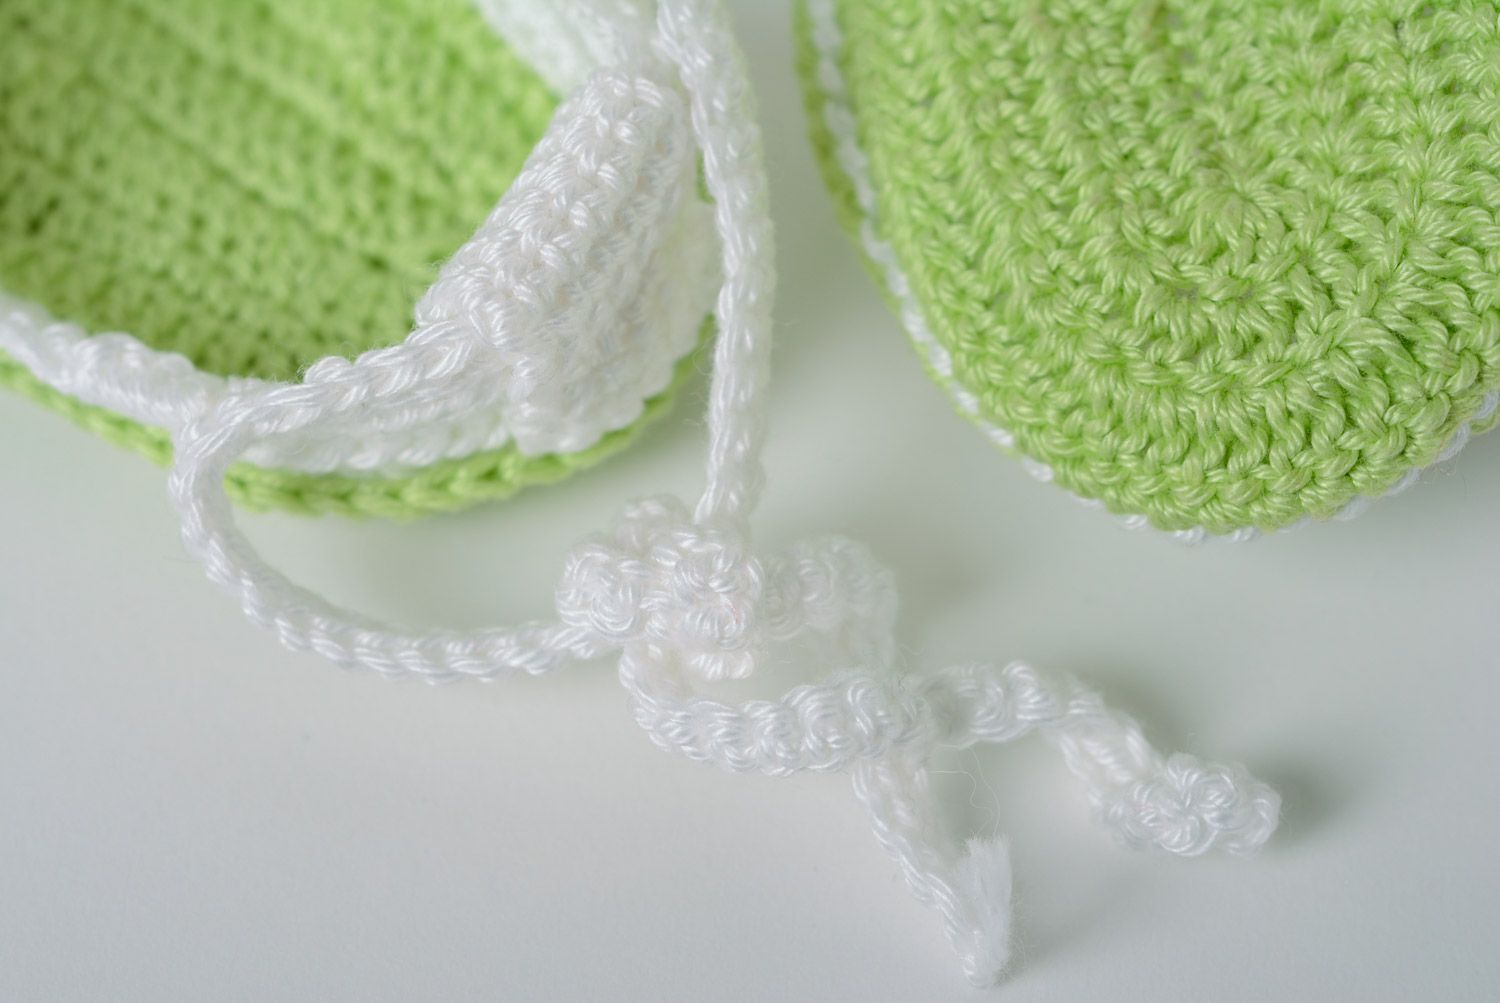 Chaussons de bébé tricotés au crochet blanc-vert faits main en forme de sandales photo 5